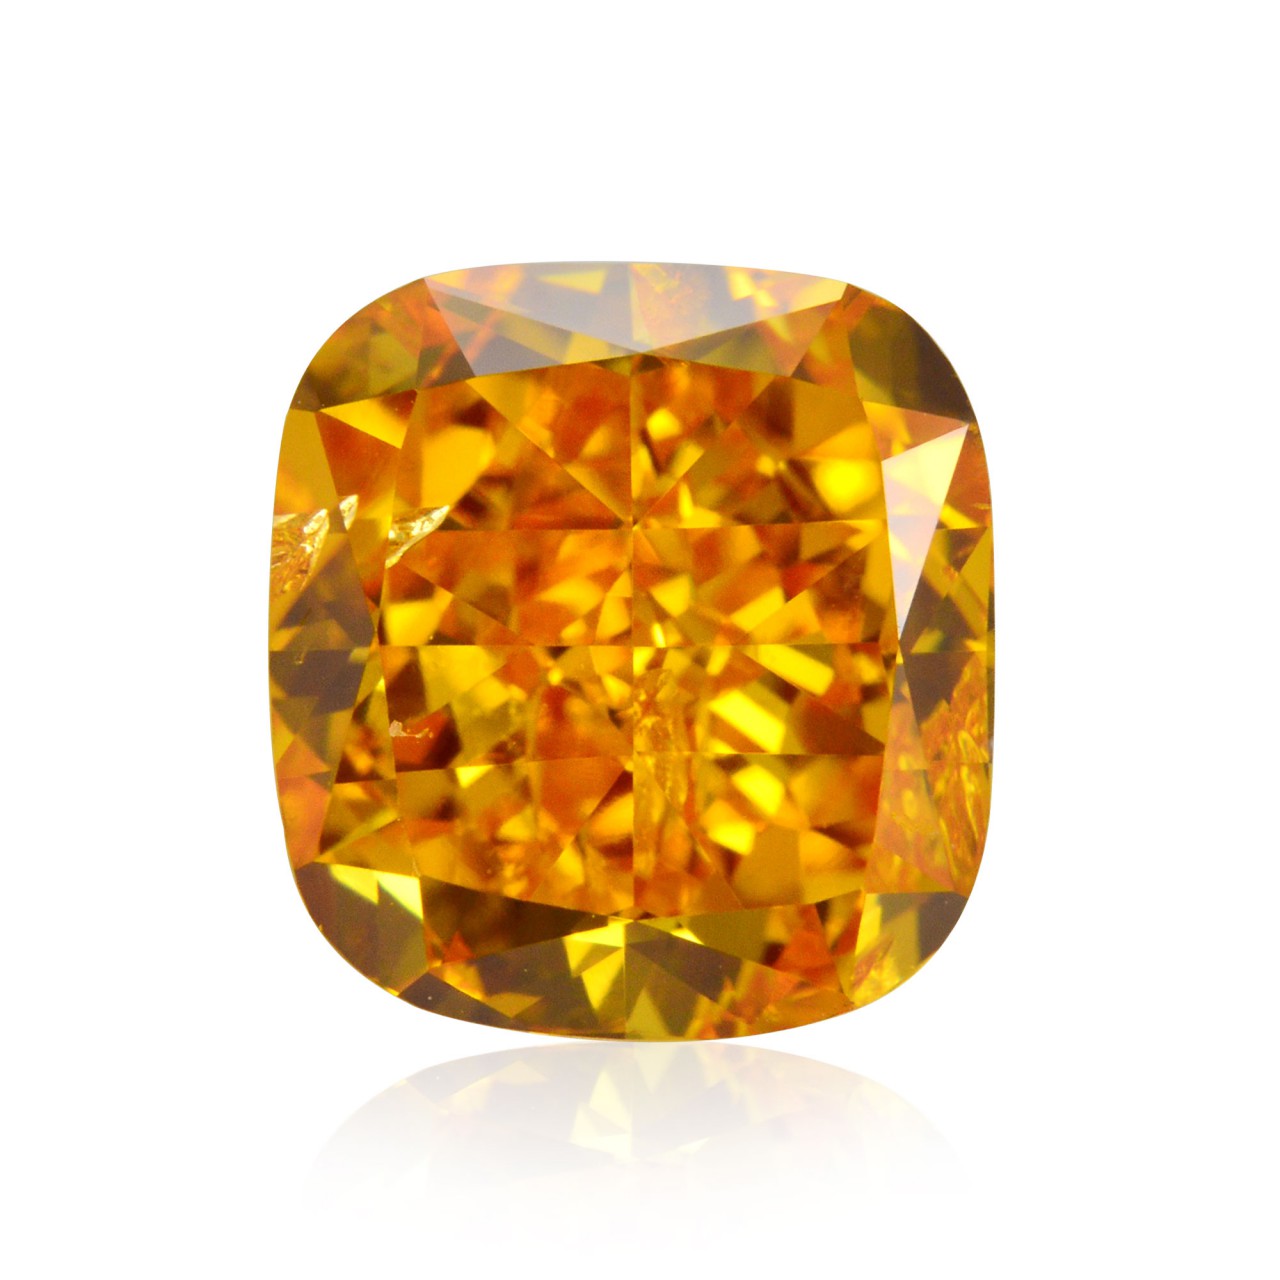 1.25 carat, Fancy Vivid Orange Diamond, Cushion Shape, SI2 